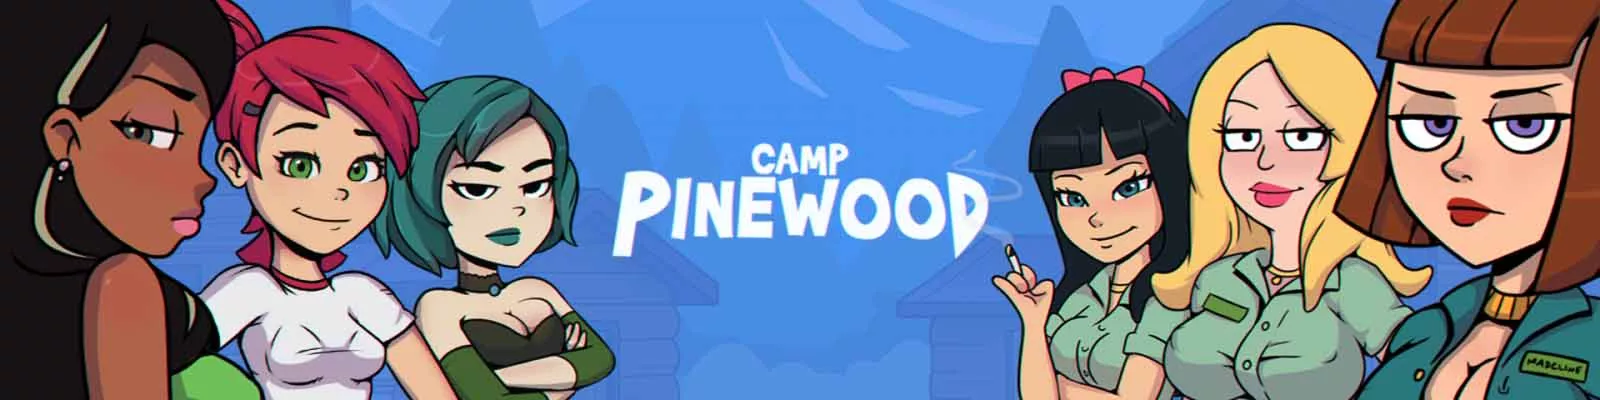 Camp Pinewood – Version 2.9.0 Bugfix